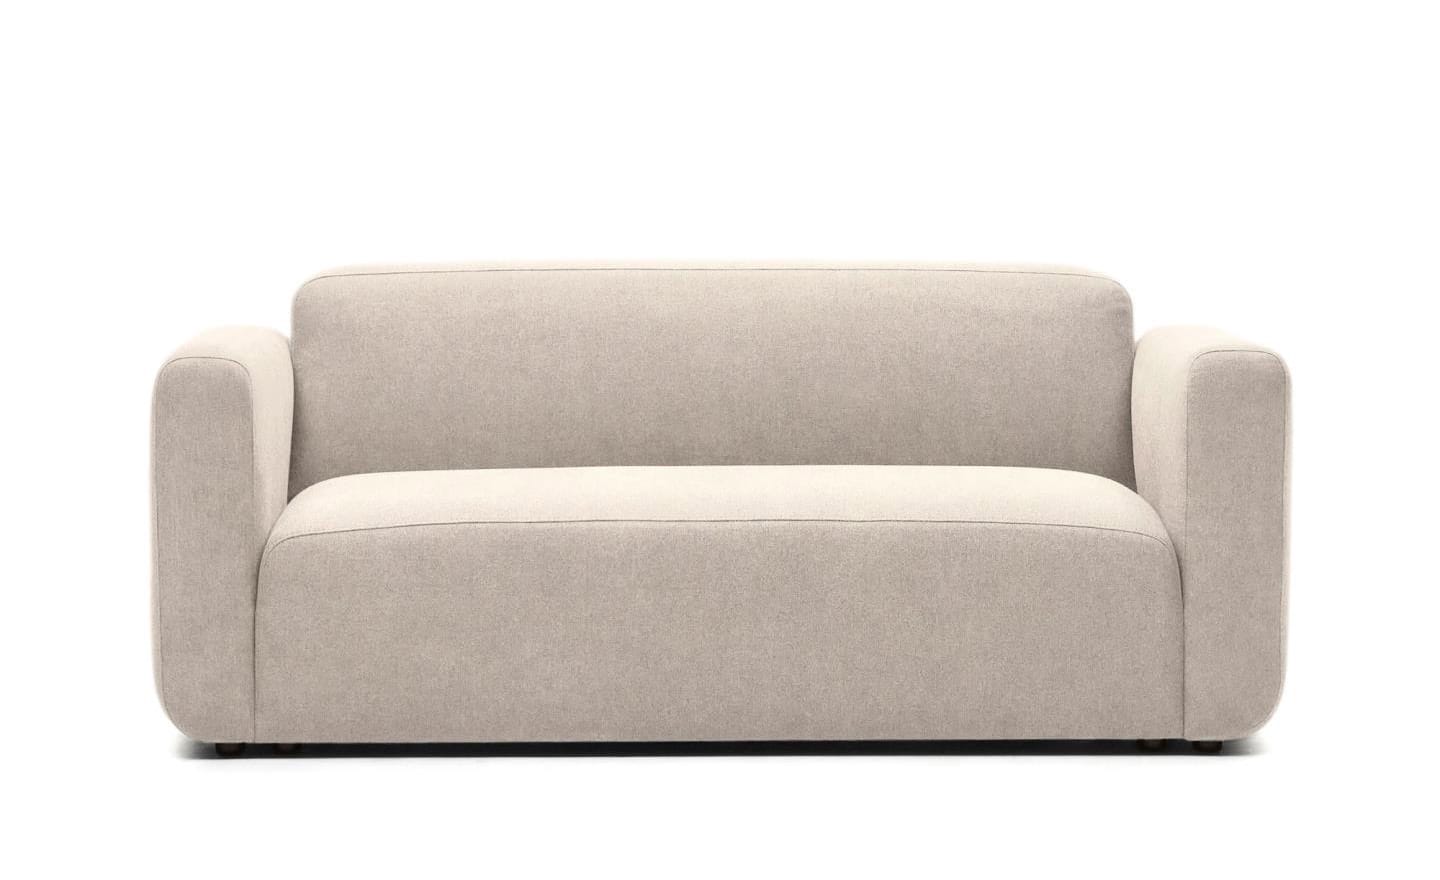 Sofá de 2 Lugares Neom Beige, sofá estofado em tecido bege estruturado, modular e versátil.